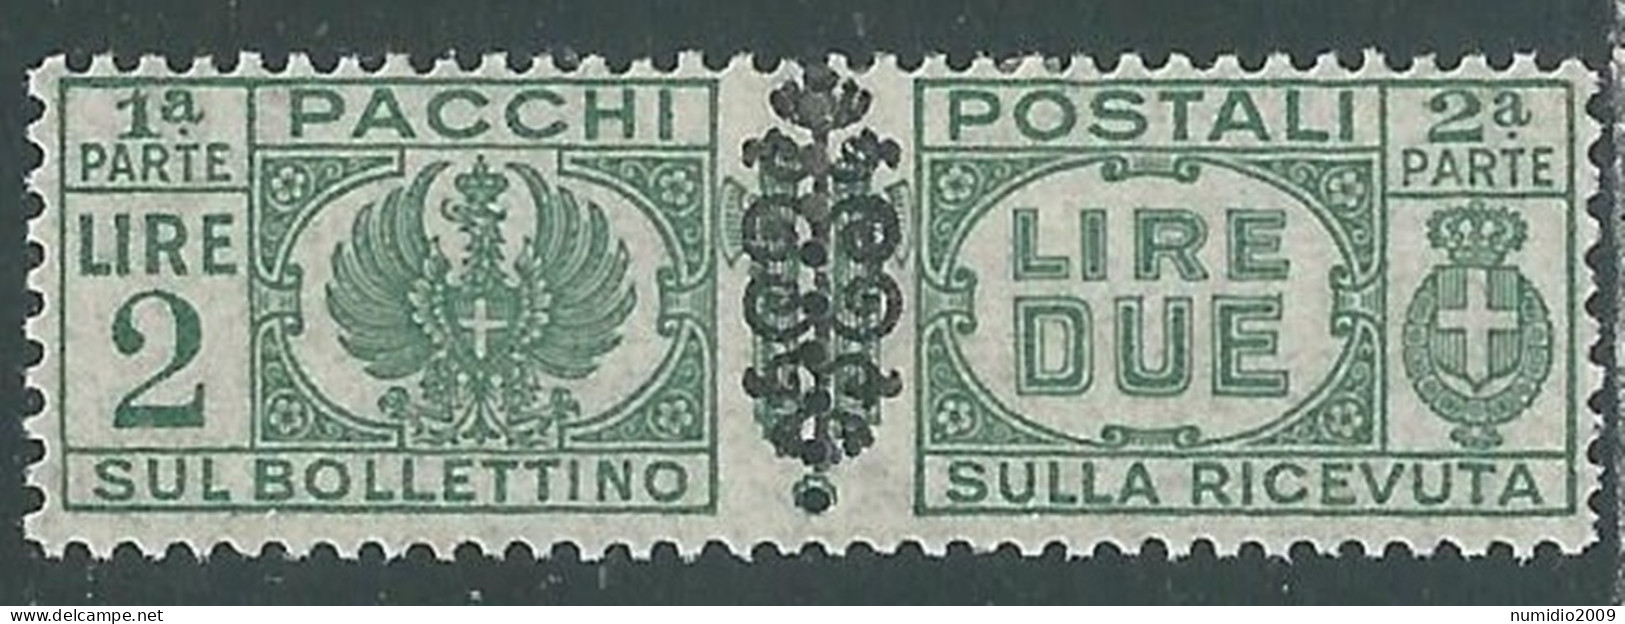 1945 LUOGOTENENZA PACCHI POSTALI 2 LIRE MH * - I18-6 - Postpaketten